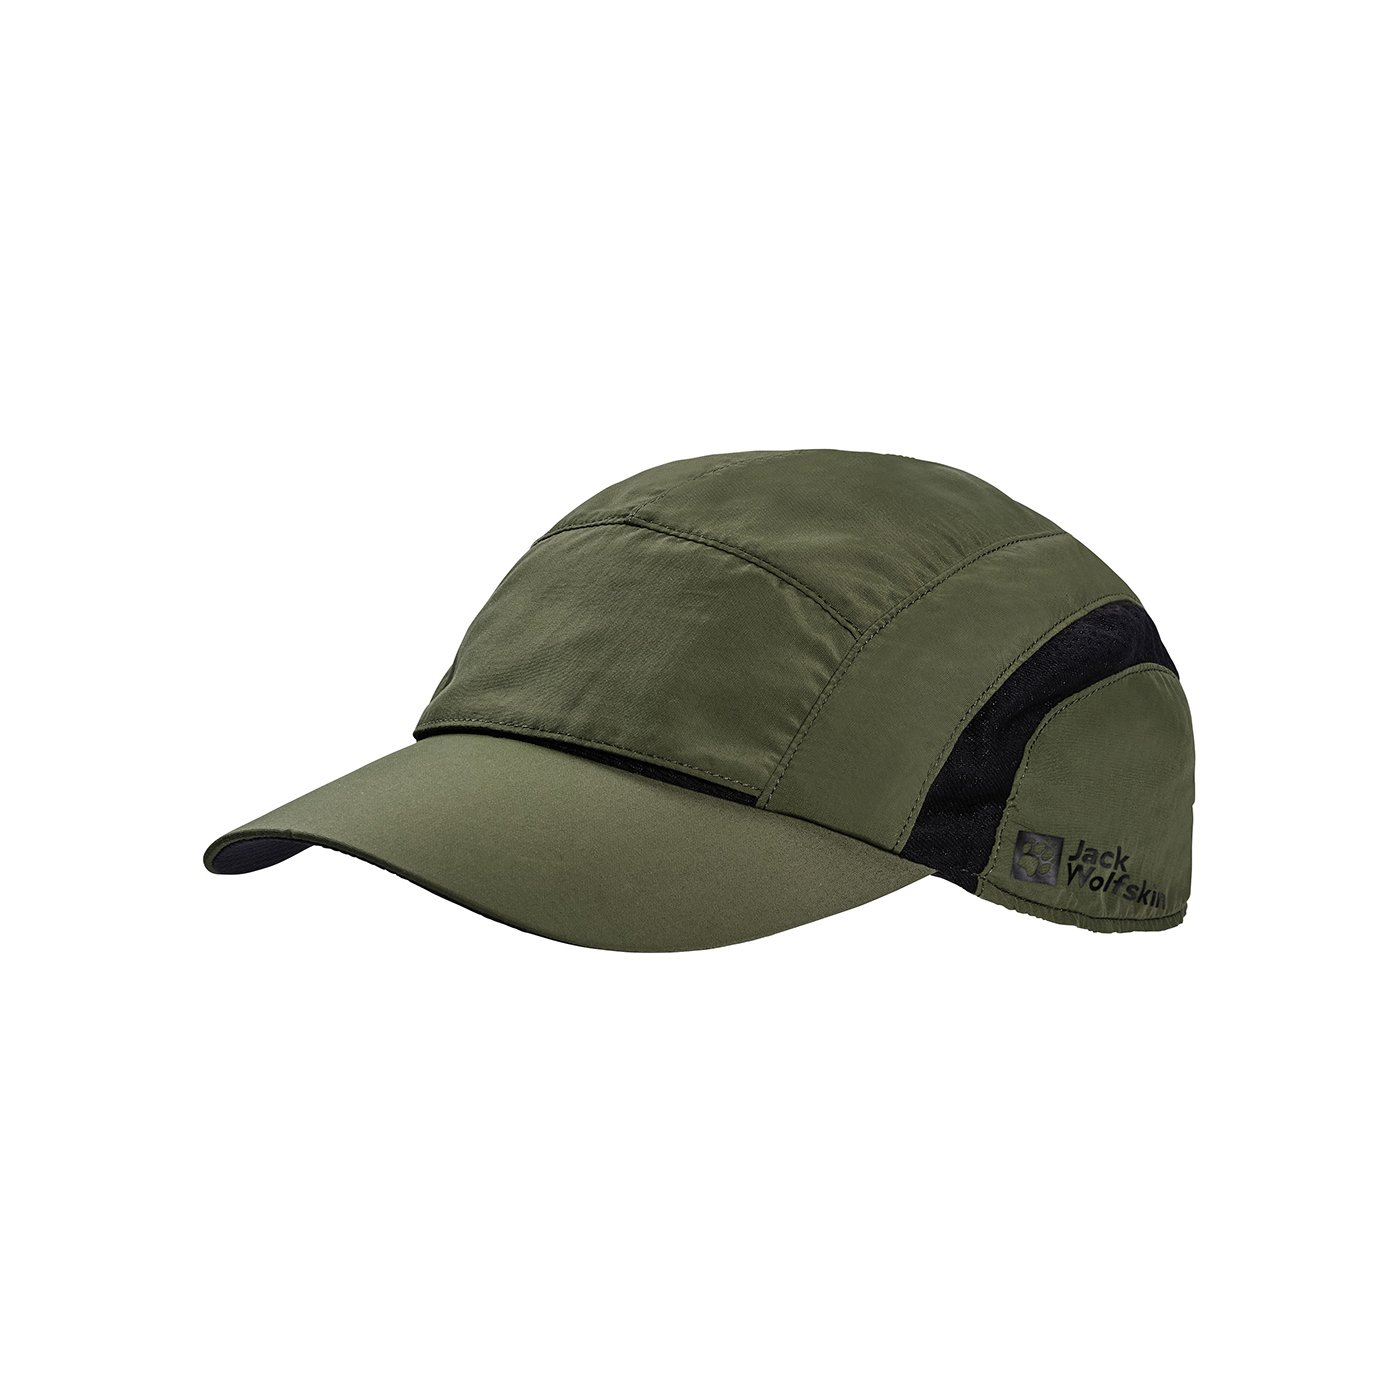 Jack Wolfskin Vent Outdoor Şapka - Yeşil - 1